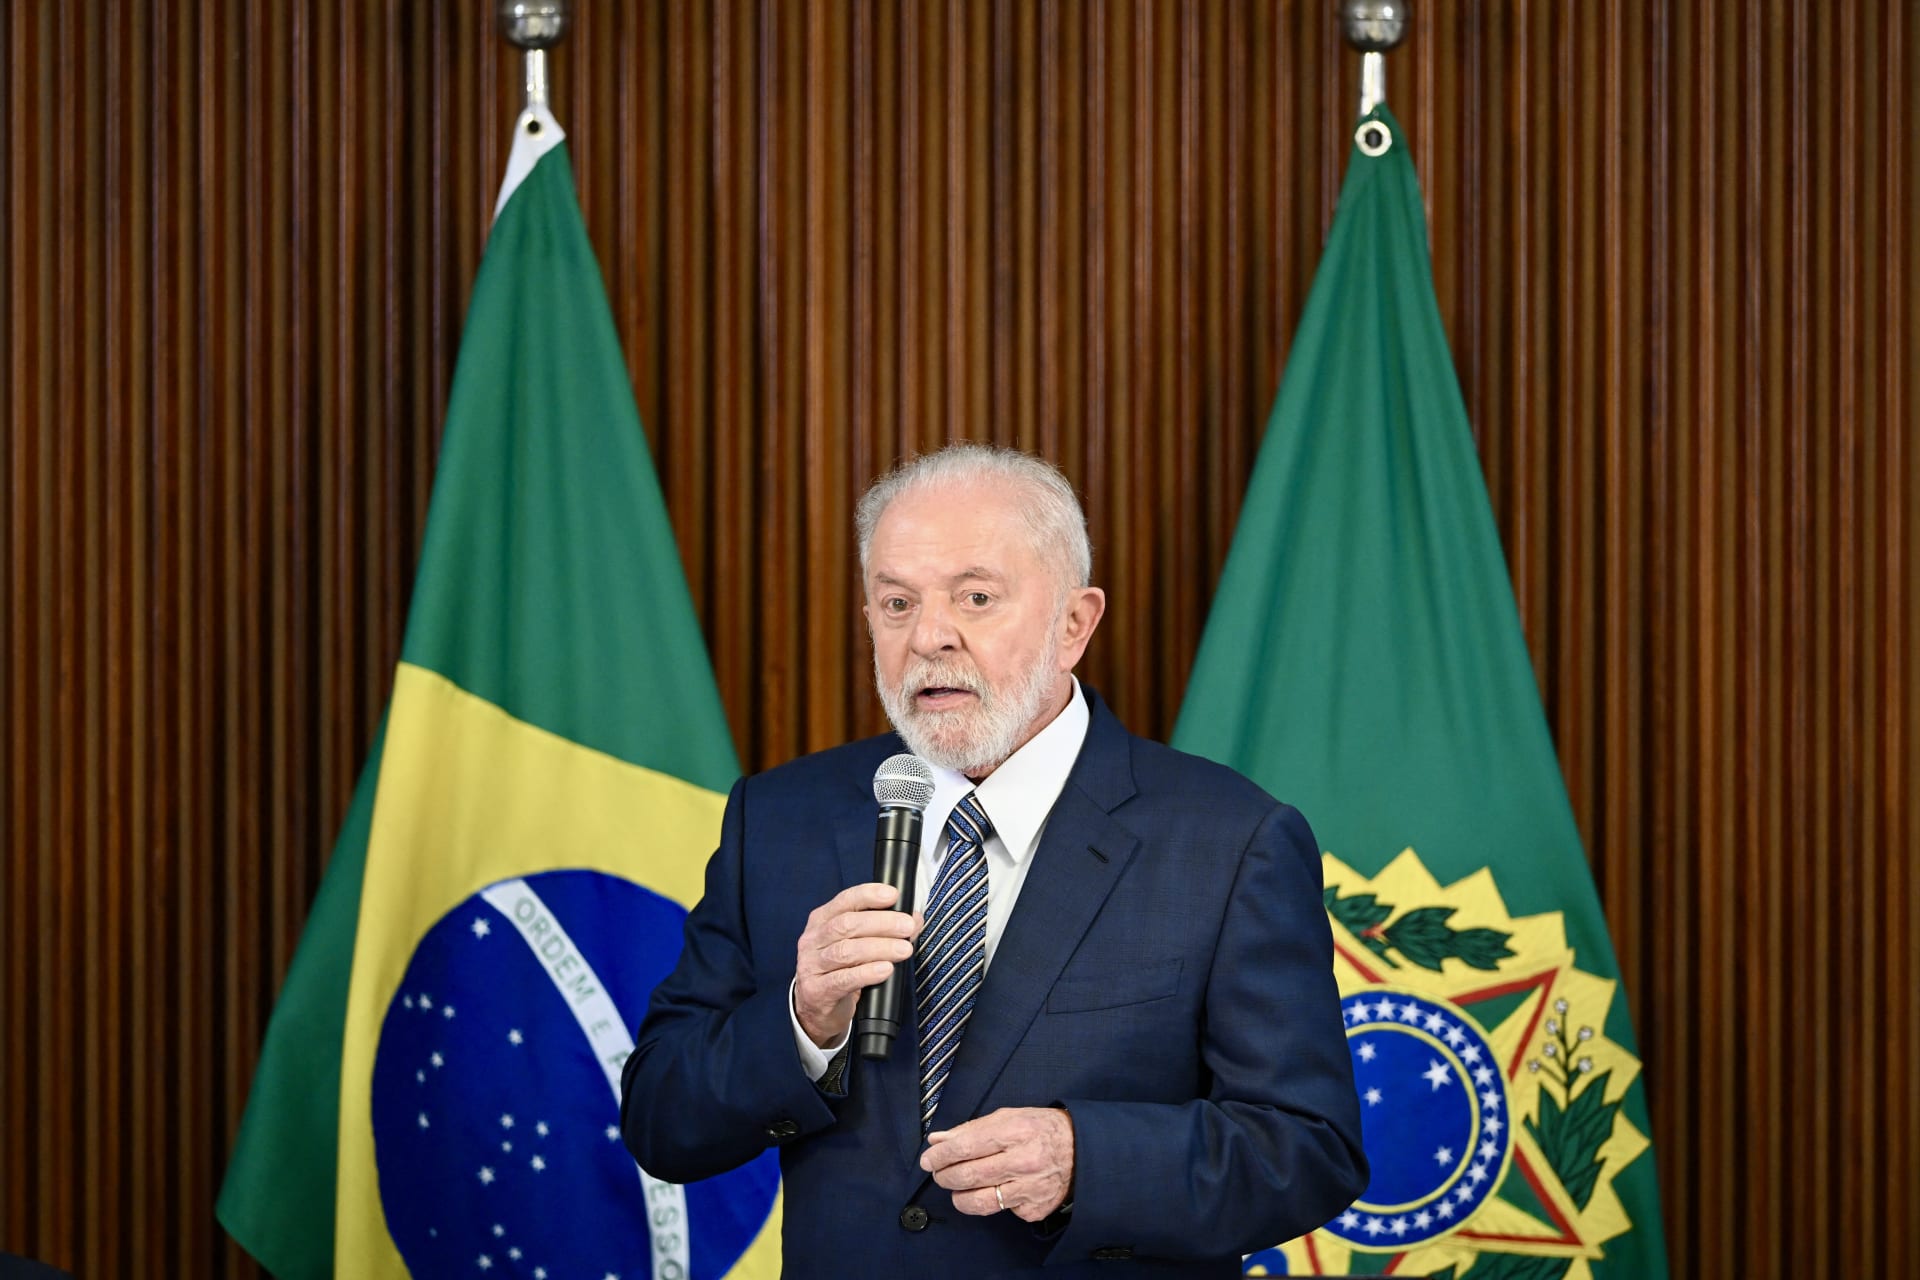 تصاعد الأزمة بين البرازيل وإسرائيل جراء تصريحات لولا دي سيلفا عن "الهولوكوست"